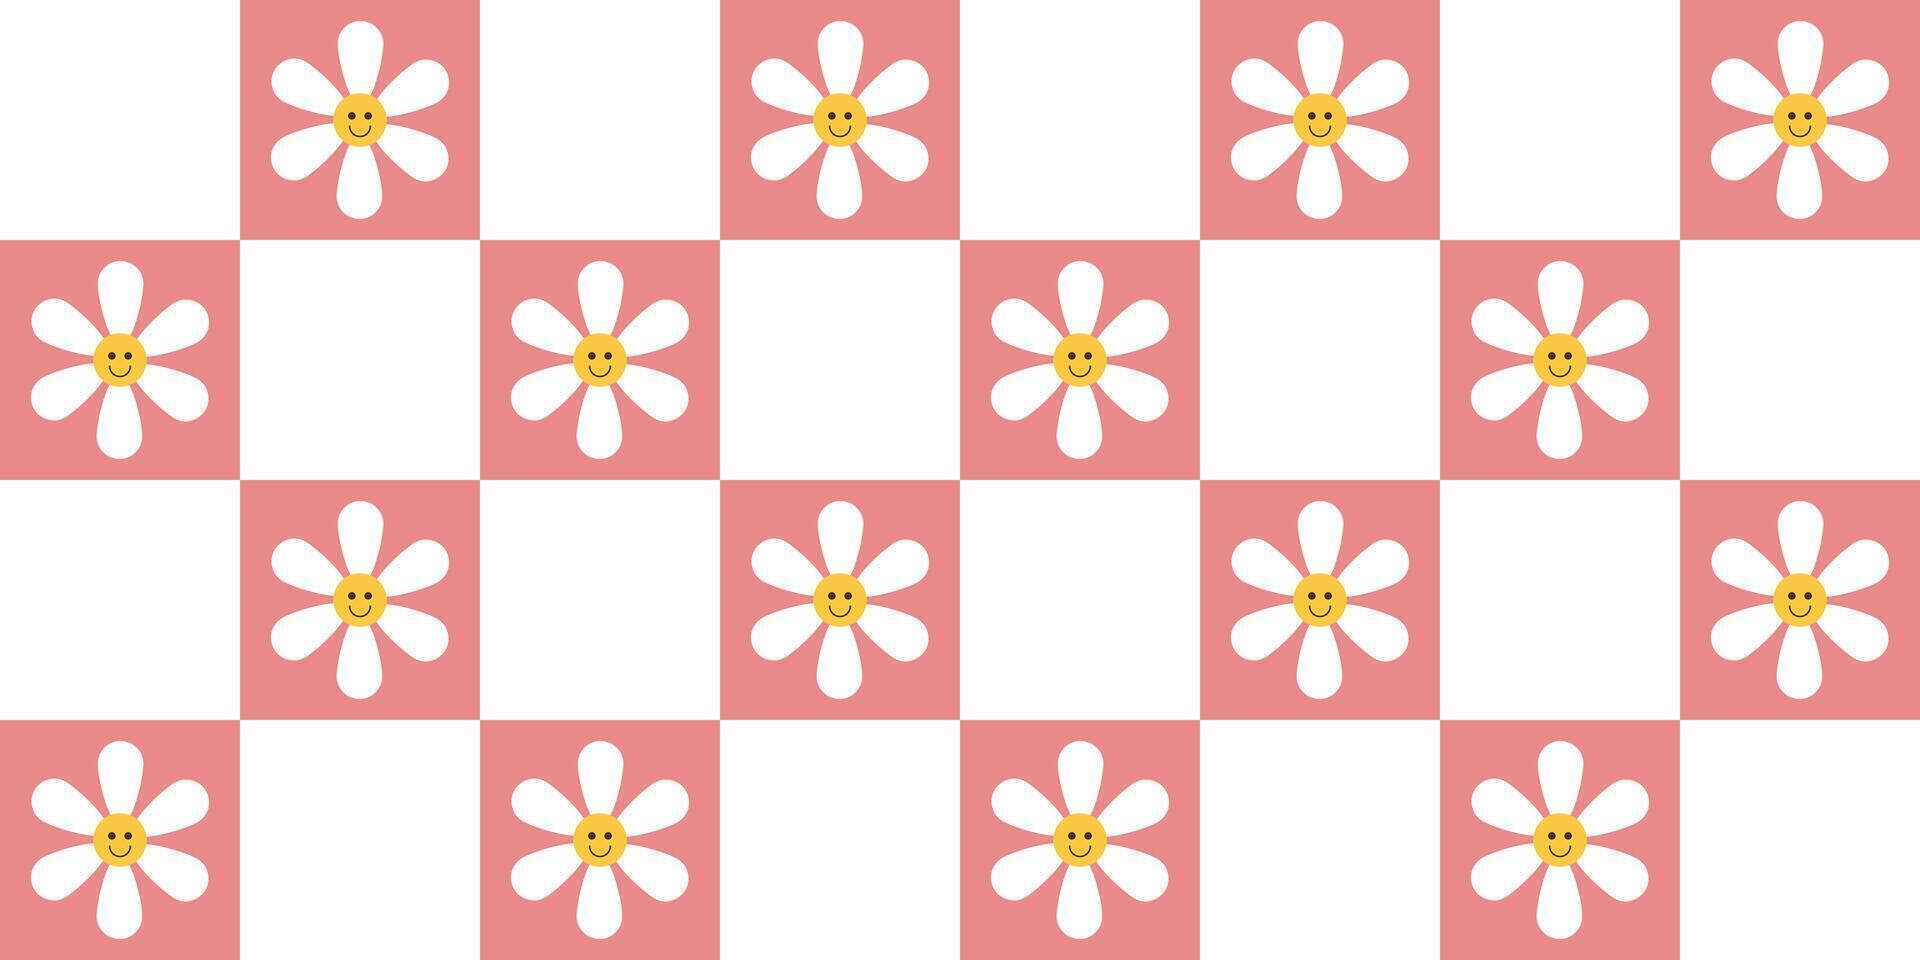 jaren 70 gevoel groovy schaakbord naadloos patroon groot plein met schattig bloem in roze gaas. rooster achtergrond, psychedelisch retro stijl. vector